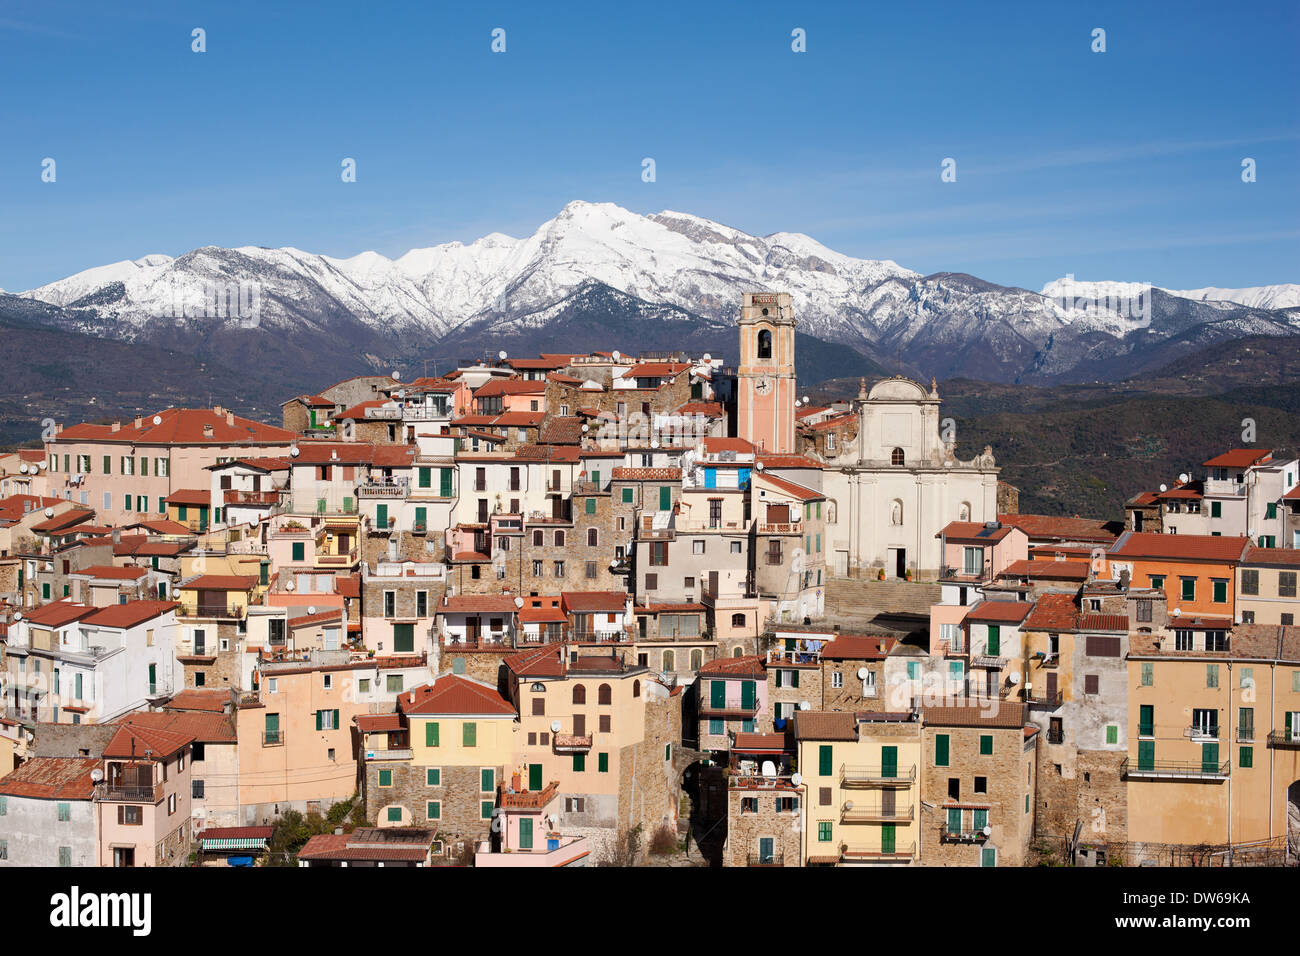 VISTA AÉREA. Pueblo medieval encaramado con los Alpes nevados en el horizonte. Perinaldo, Provincia de Imperia, Liguria, Italia. Foto de stock